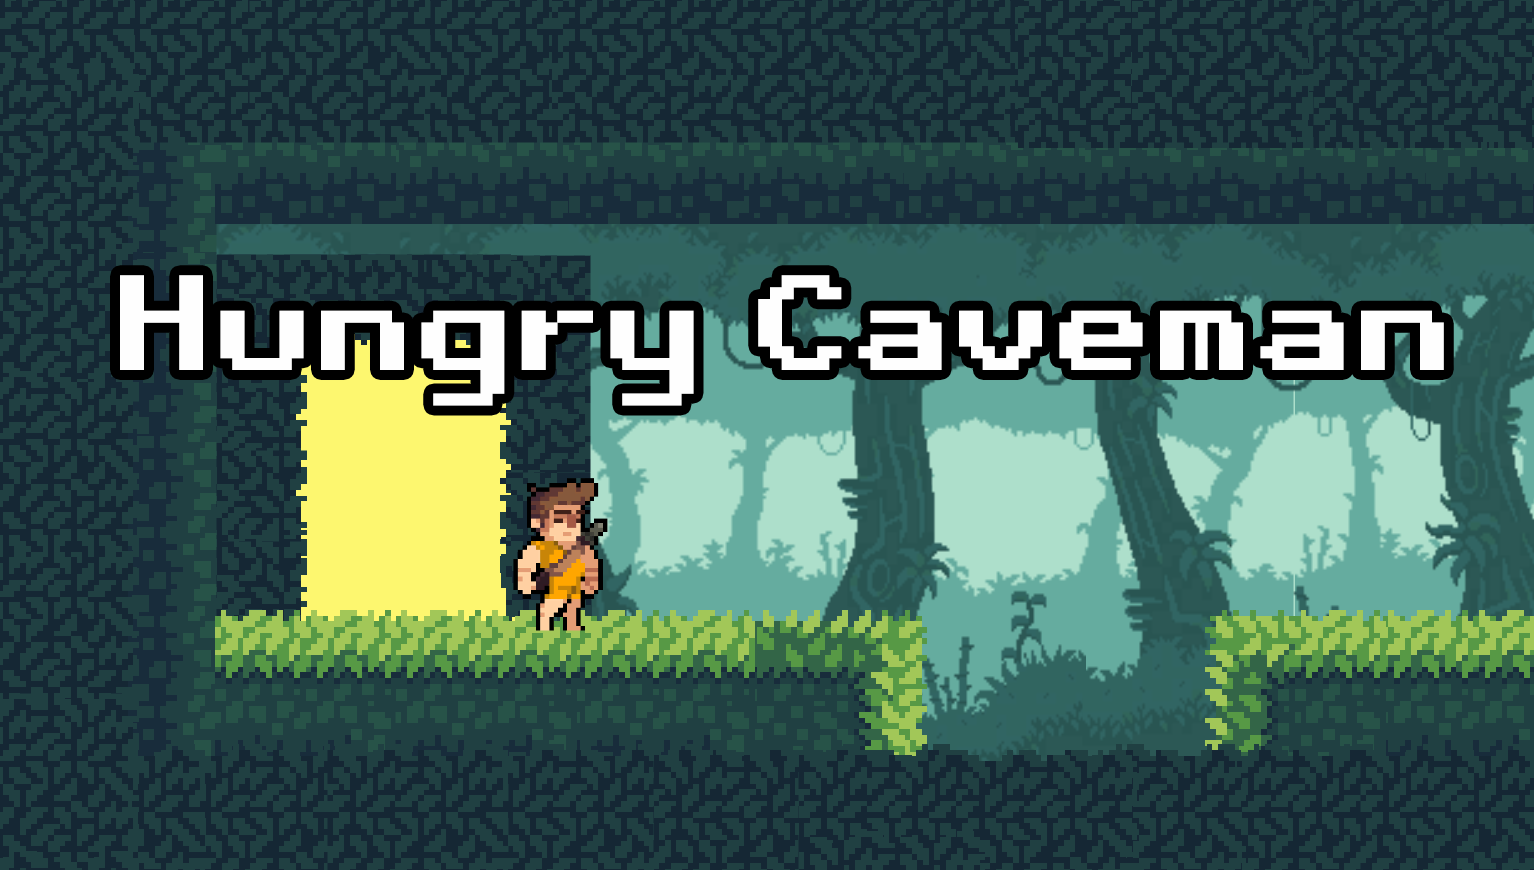 Hungry Caveman